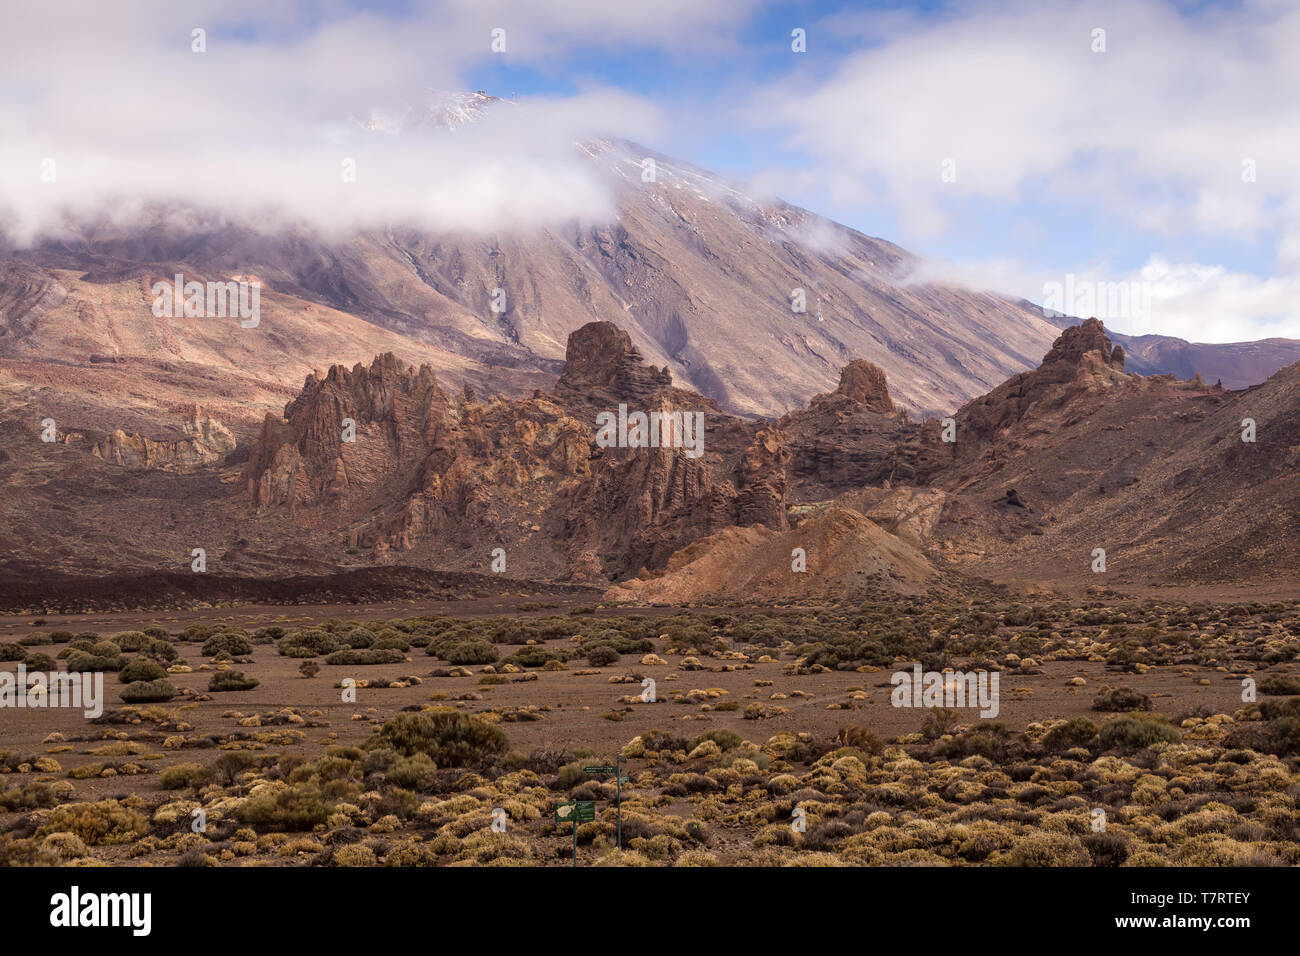 Piedras y rocas de lava alrededor del volcán cubierto por las plantas de genéricos. La parte superior del Pico del Teide, rodeado por nubes blancas. Parque Nacional del Teide, Tenerif Foto de stock